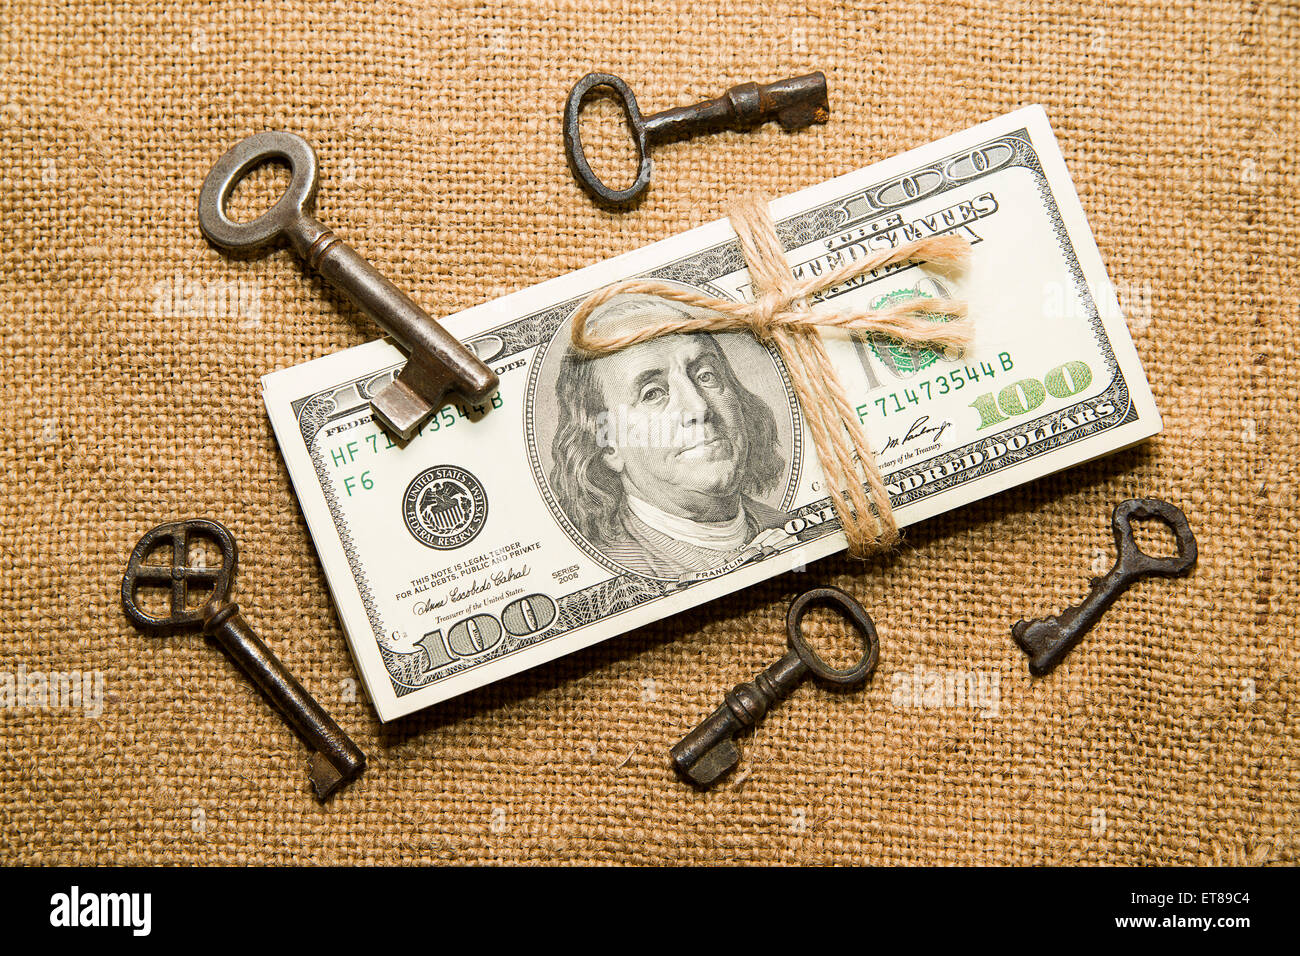 Un paquet de dollars attaché avec une corde et des clés dans le vieux tissu Banque D'Images